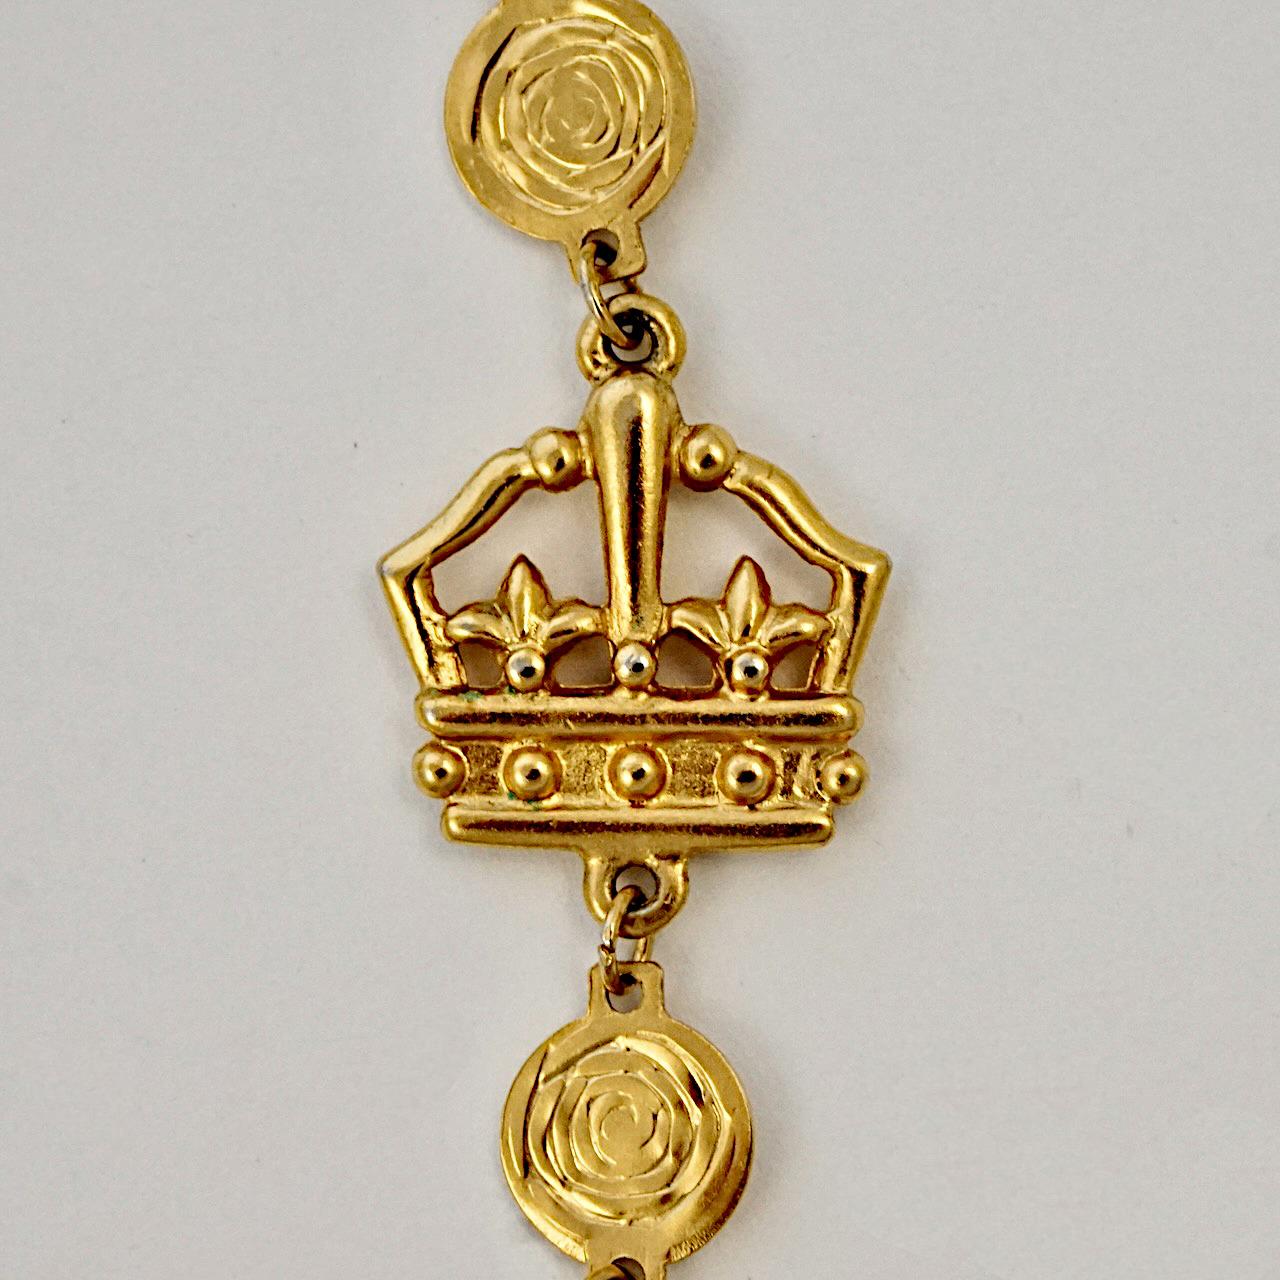 Liz Claiborne vergoldete Halskette mit Scheibengliedern und Kronen- und Löwenmotiven. Messlänge 97,7 cm / 38,4 Zoll. Die Halskette ist in sehr gutem Zustand.

Dies ist eine schöne Liz Claiborne Halskette in einer schönen Krone und Löwe Design. Ca.